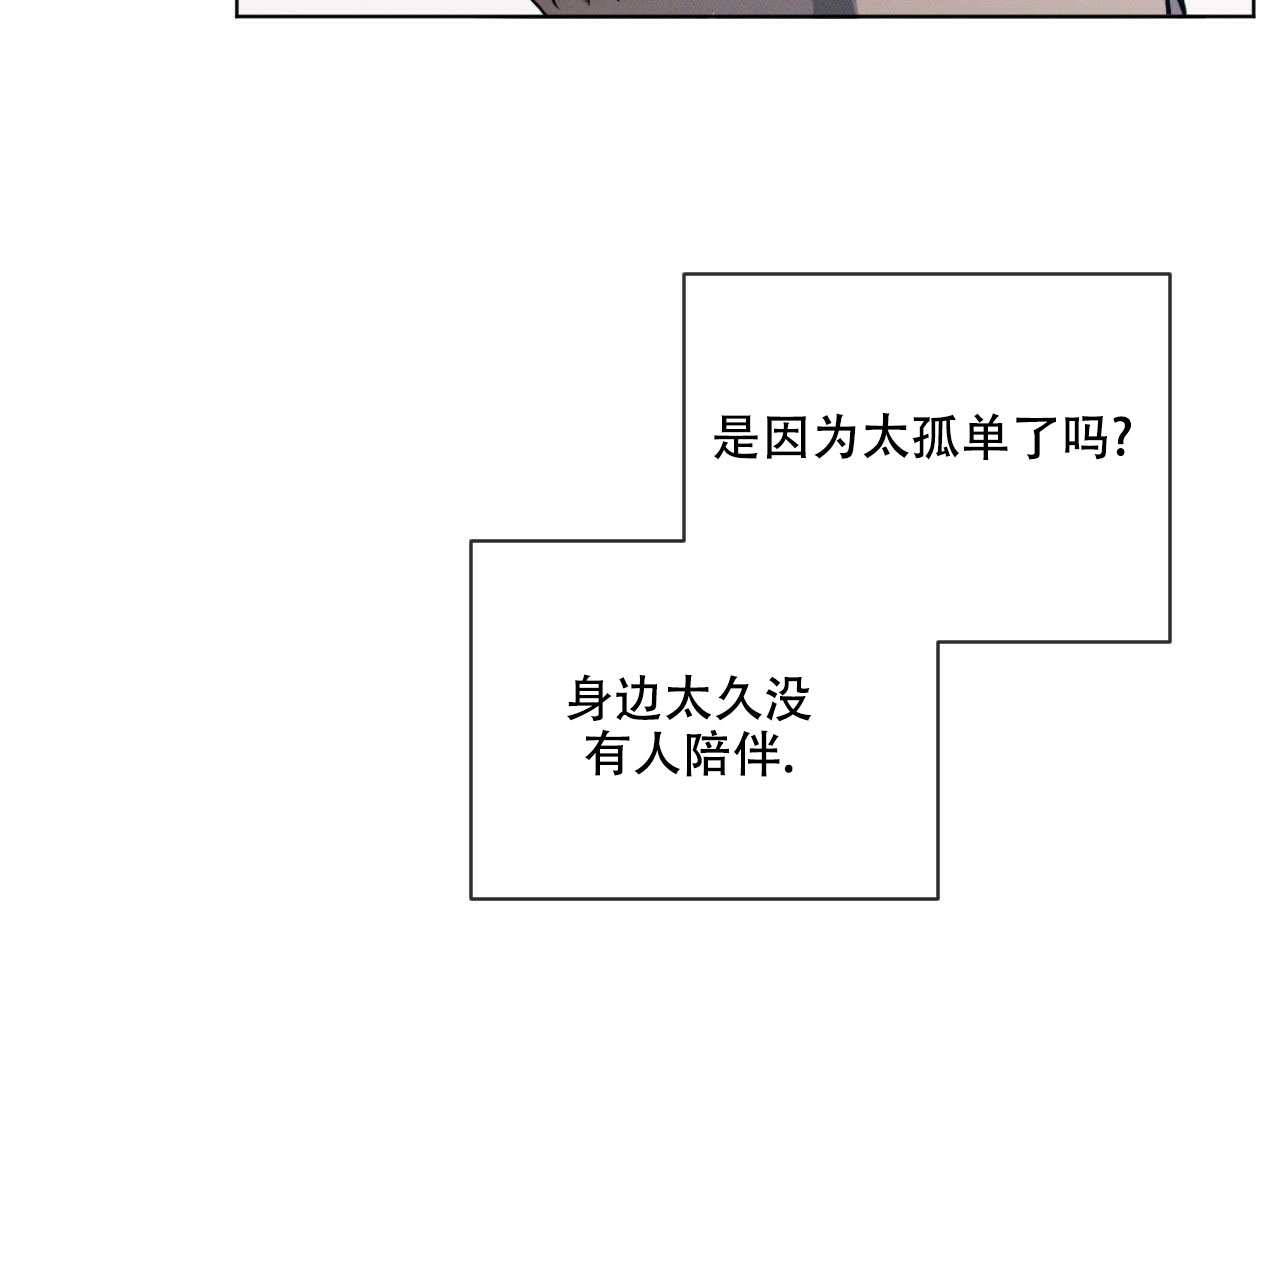 啵乐官网免费漫画67